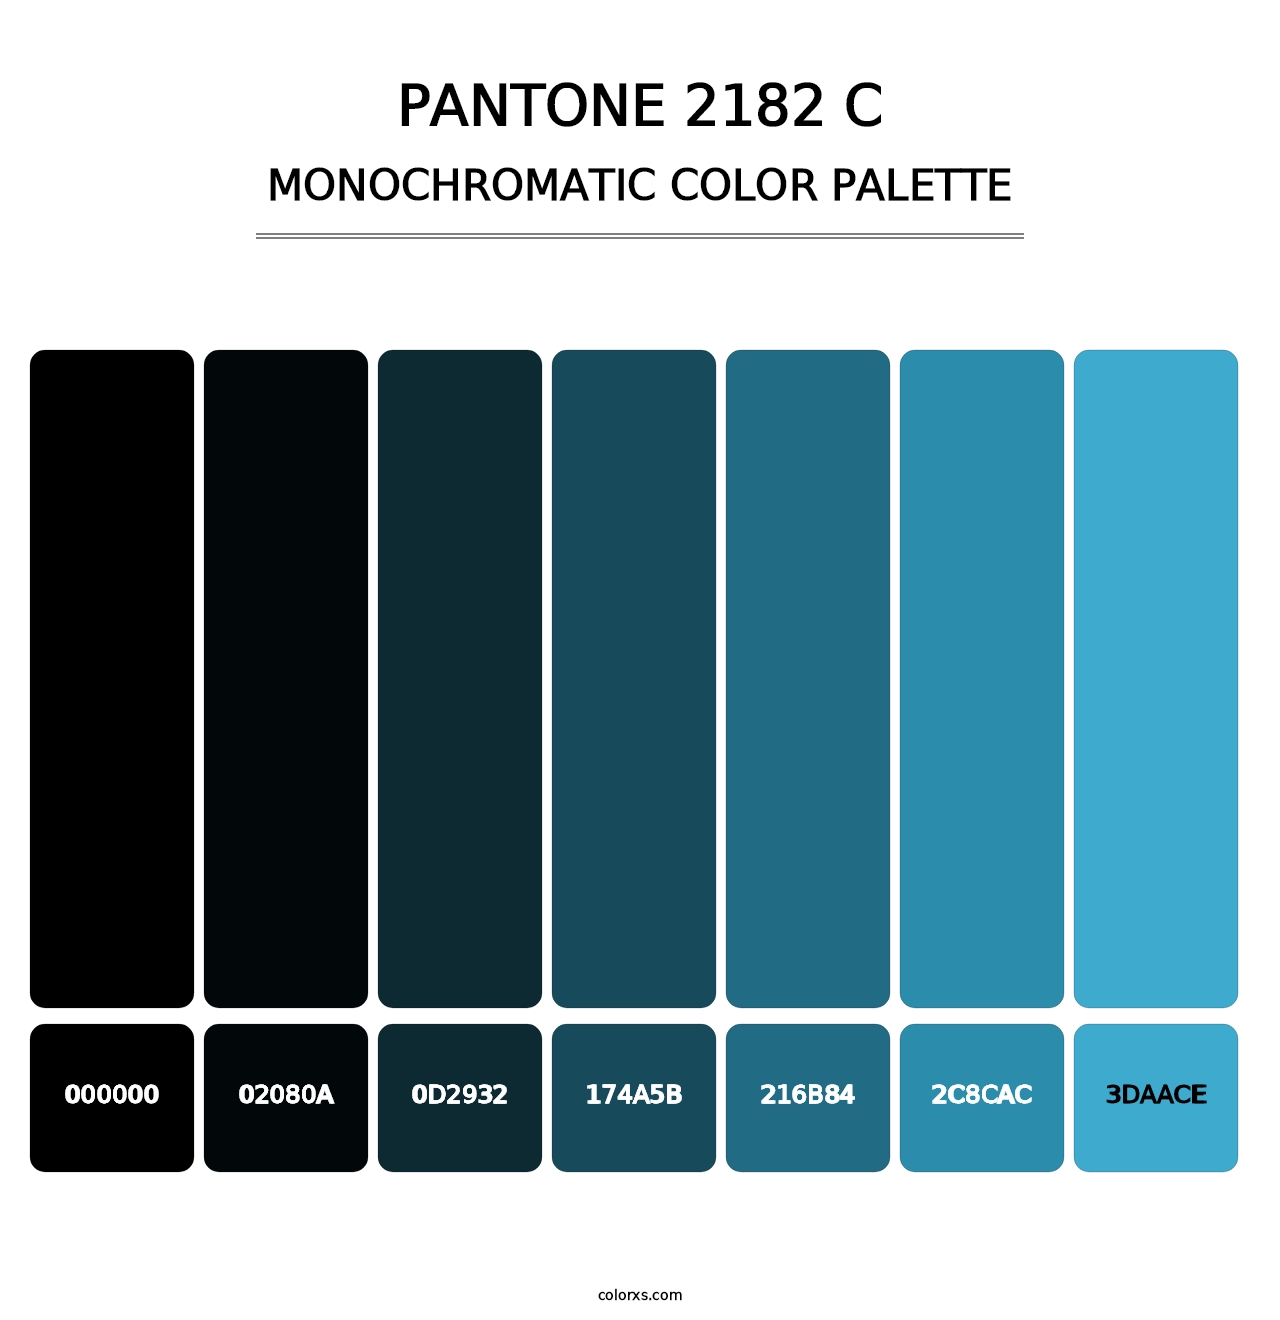 PANTONE 2182 C - Monochromatic Color Palette